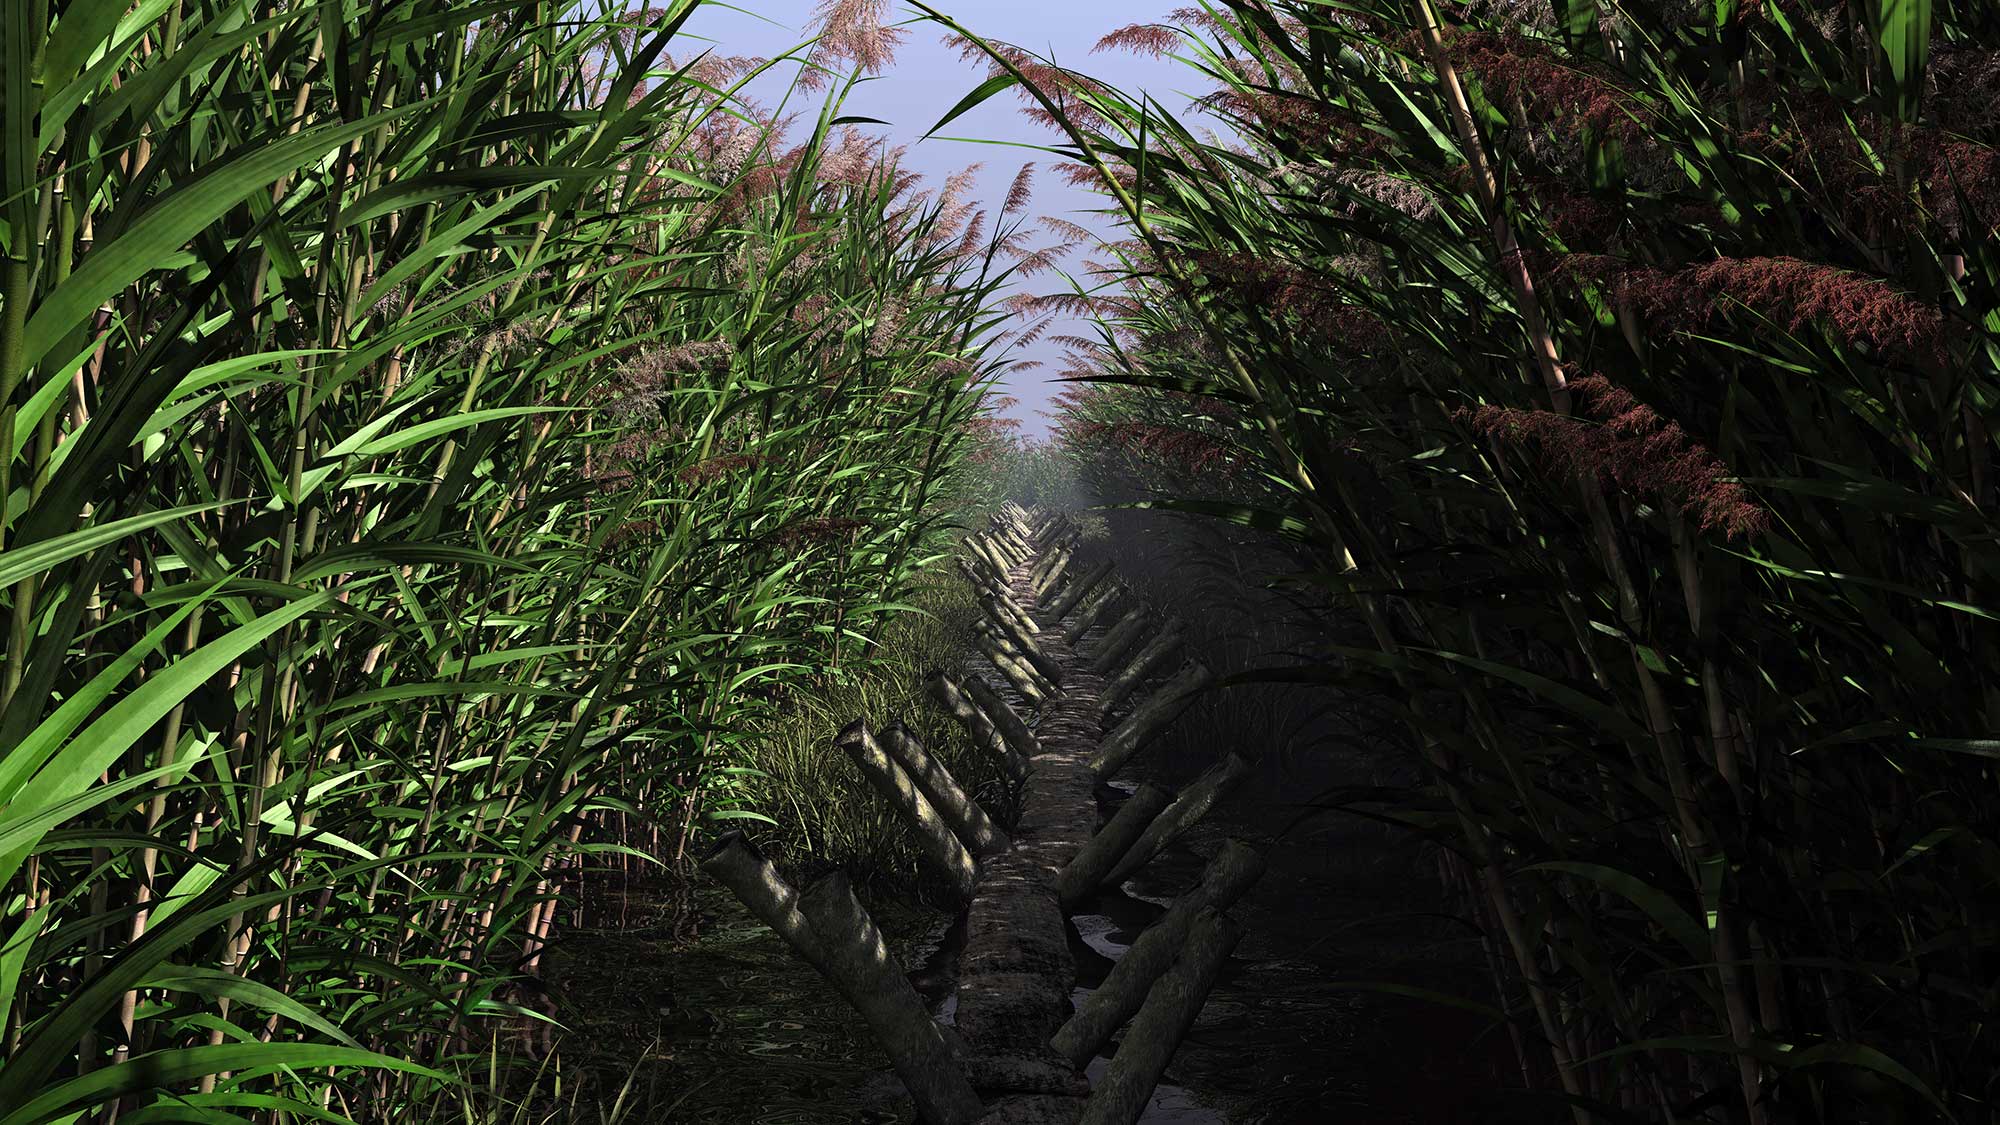 Wooden walkway between reeds